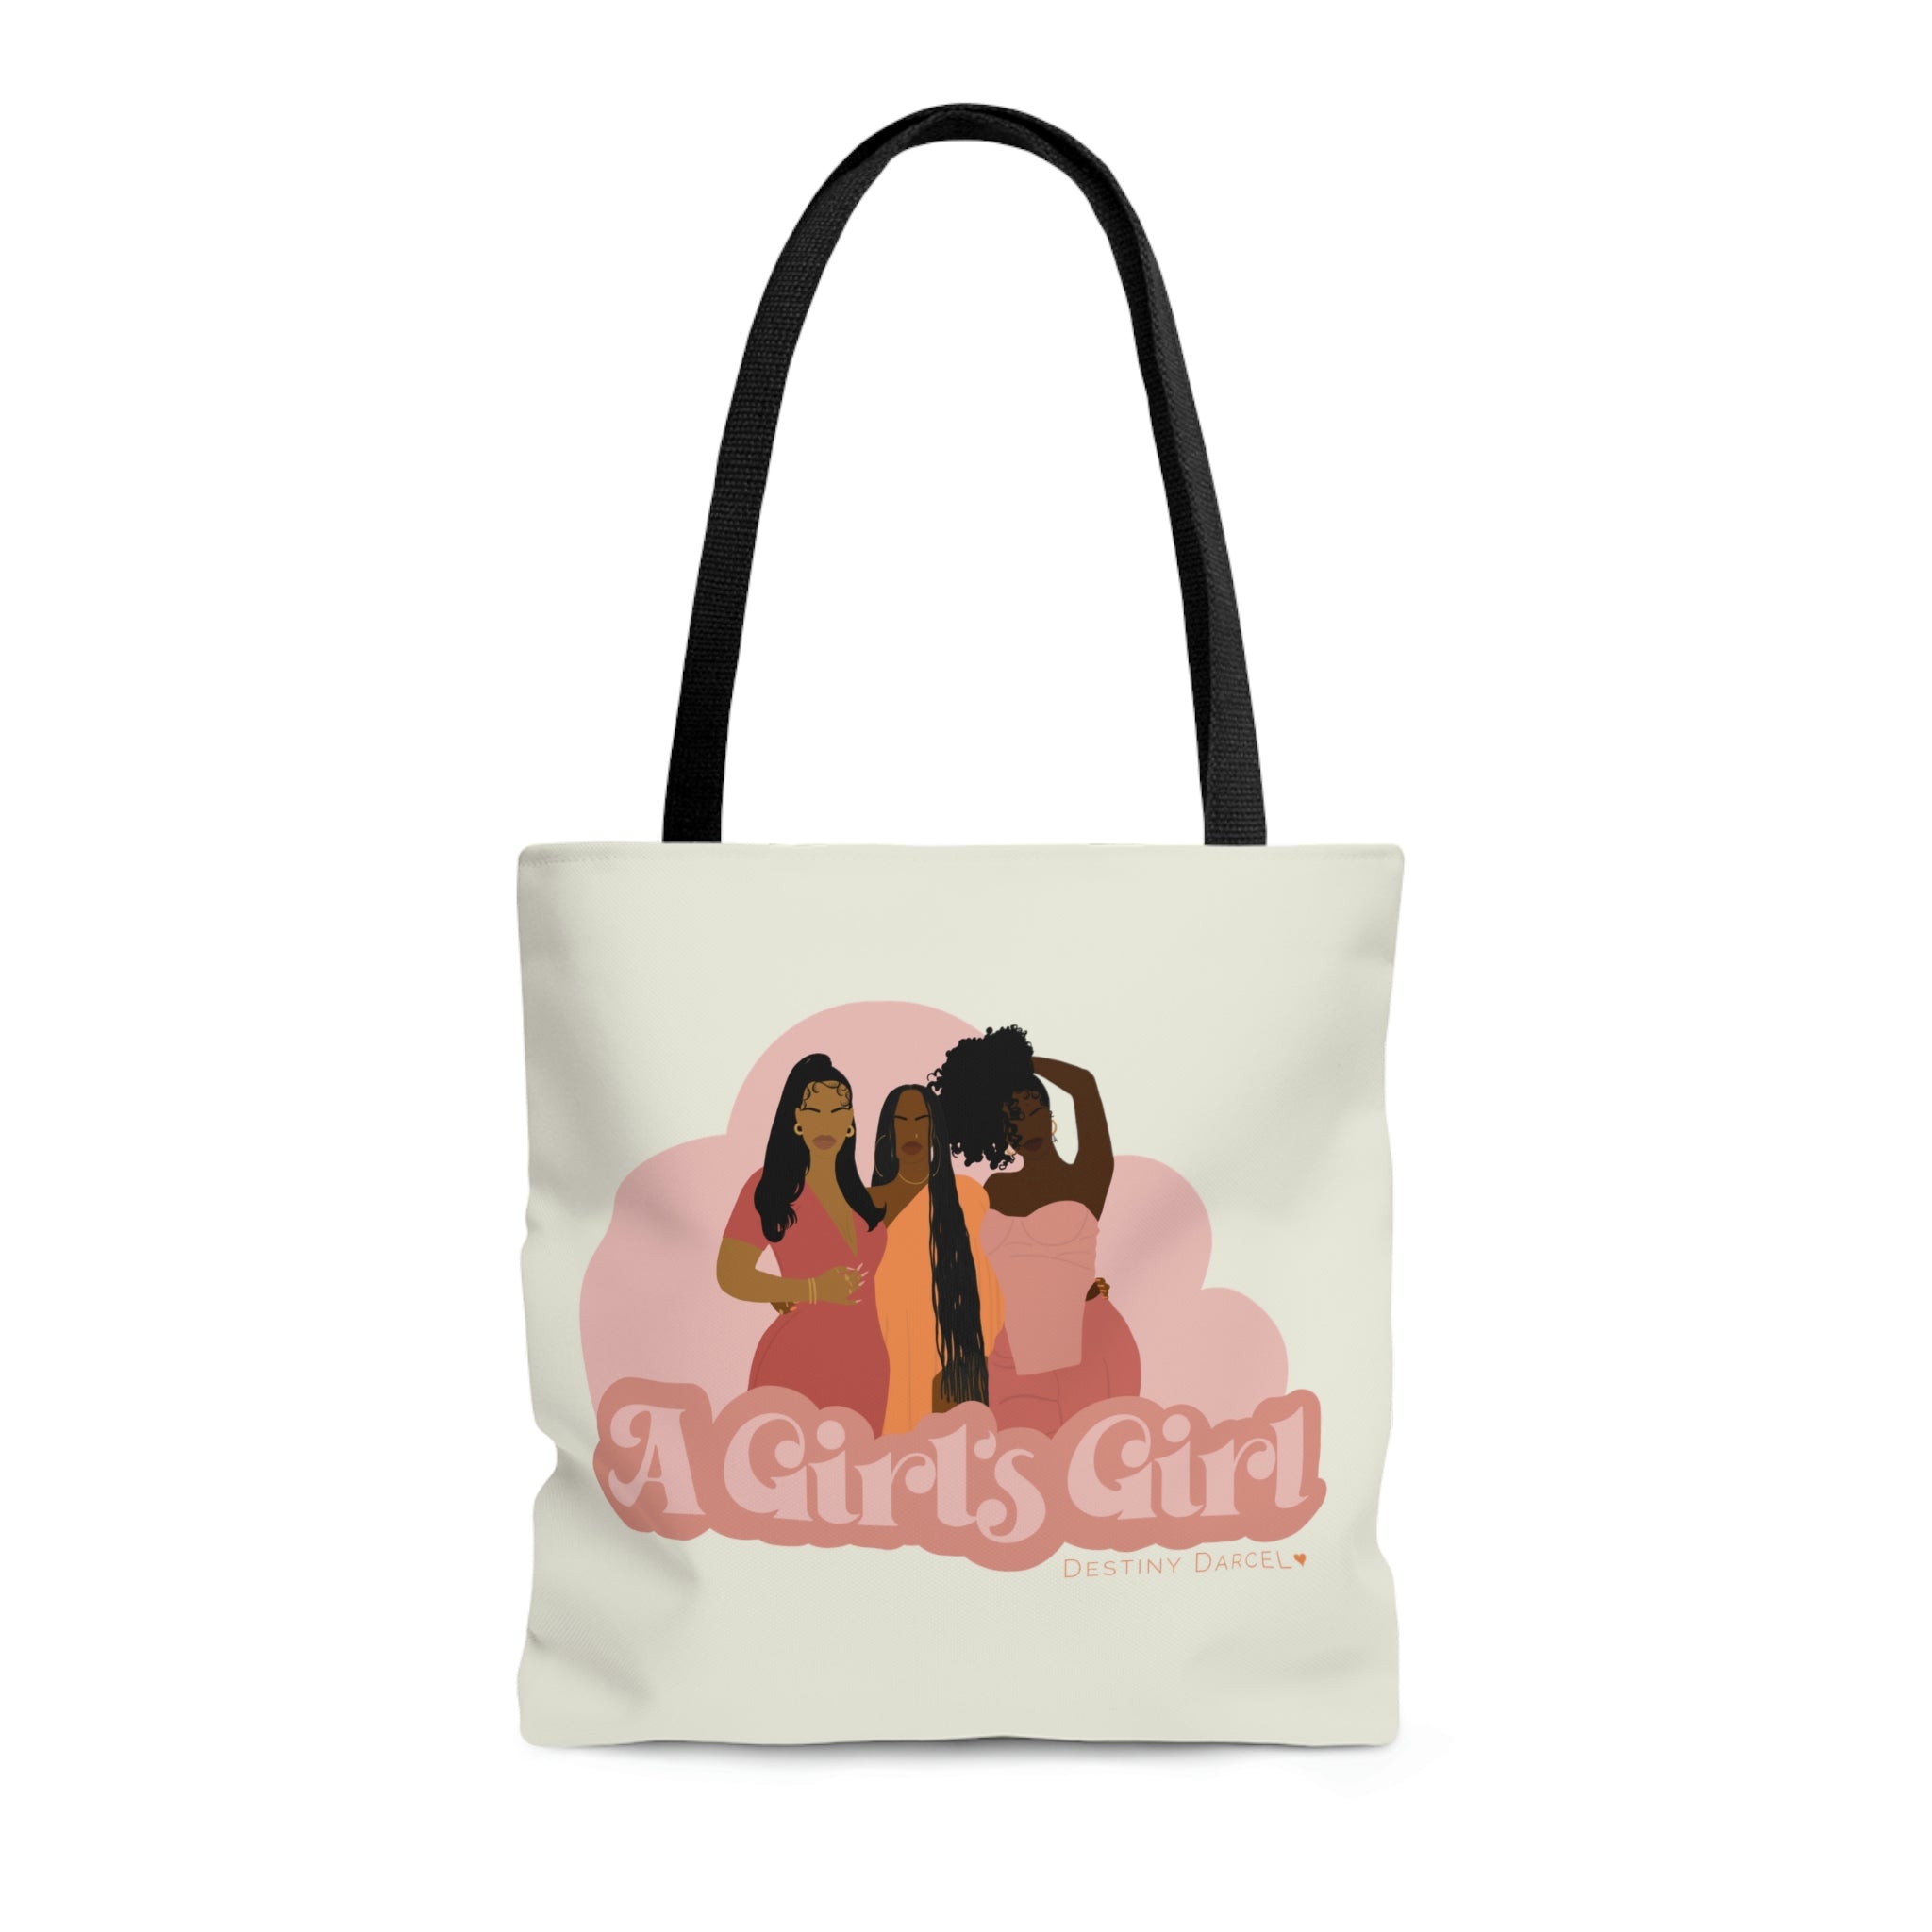 Girl's Girl Tote Bag